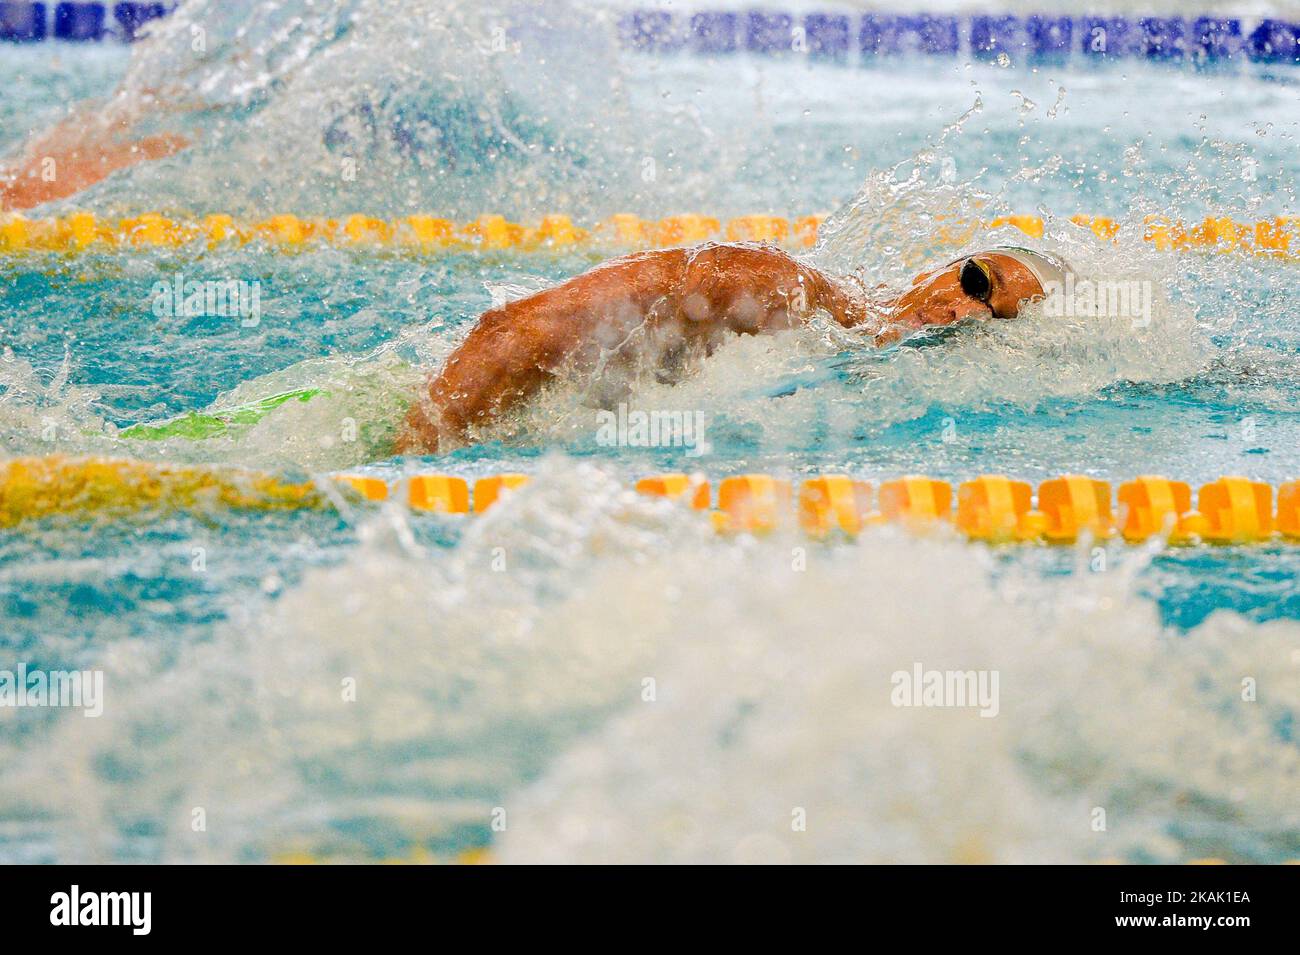 Lorys Bourelly, francese, compete su Heat 10 del Freestyle Mens 100m all'Amsterdam Swim Meet nella piscina Sloterpark di Amsterdam, nei Paesi Bassi, il 16 dicembre 2016. (Foto di Andy Astfalck/NurPhoto) *** Please use Credit from Credit Field *** Foto Stock